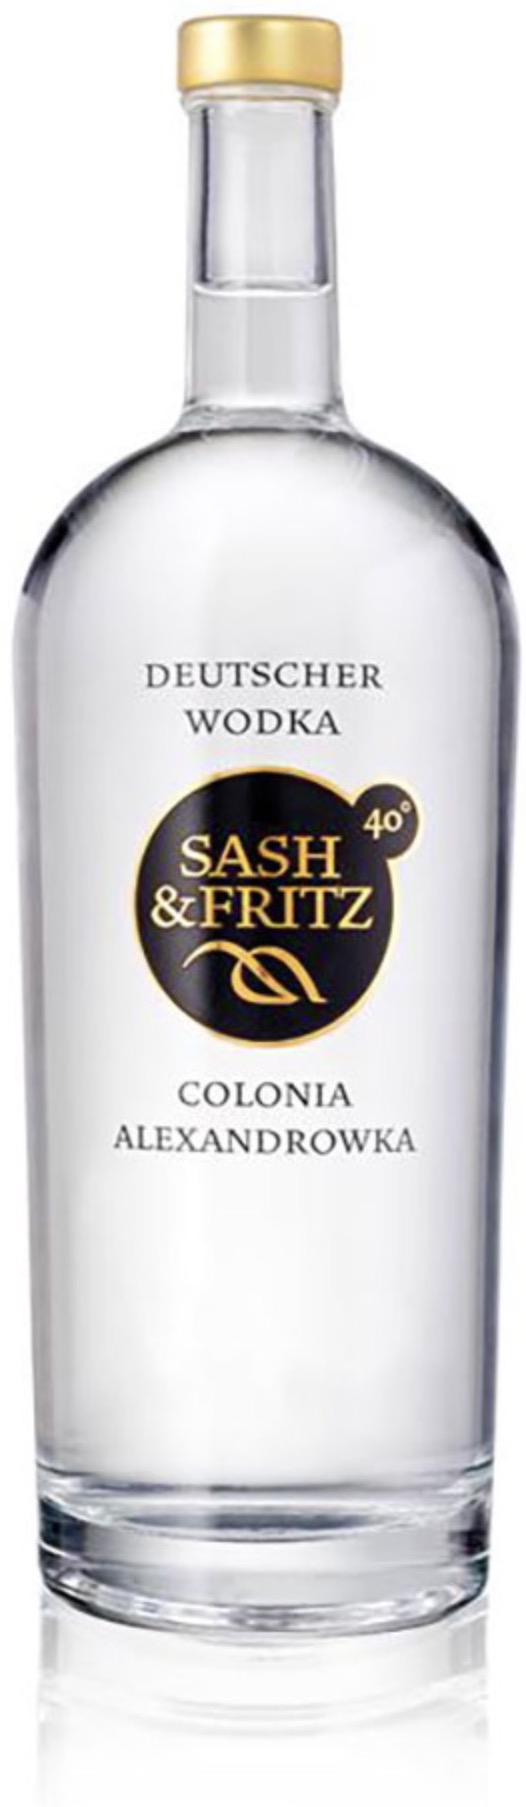 Sash & Fritz Wodka 40 % 0,7 l